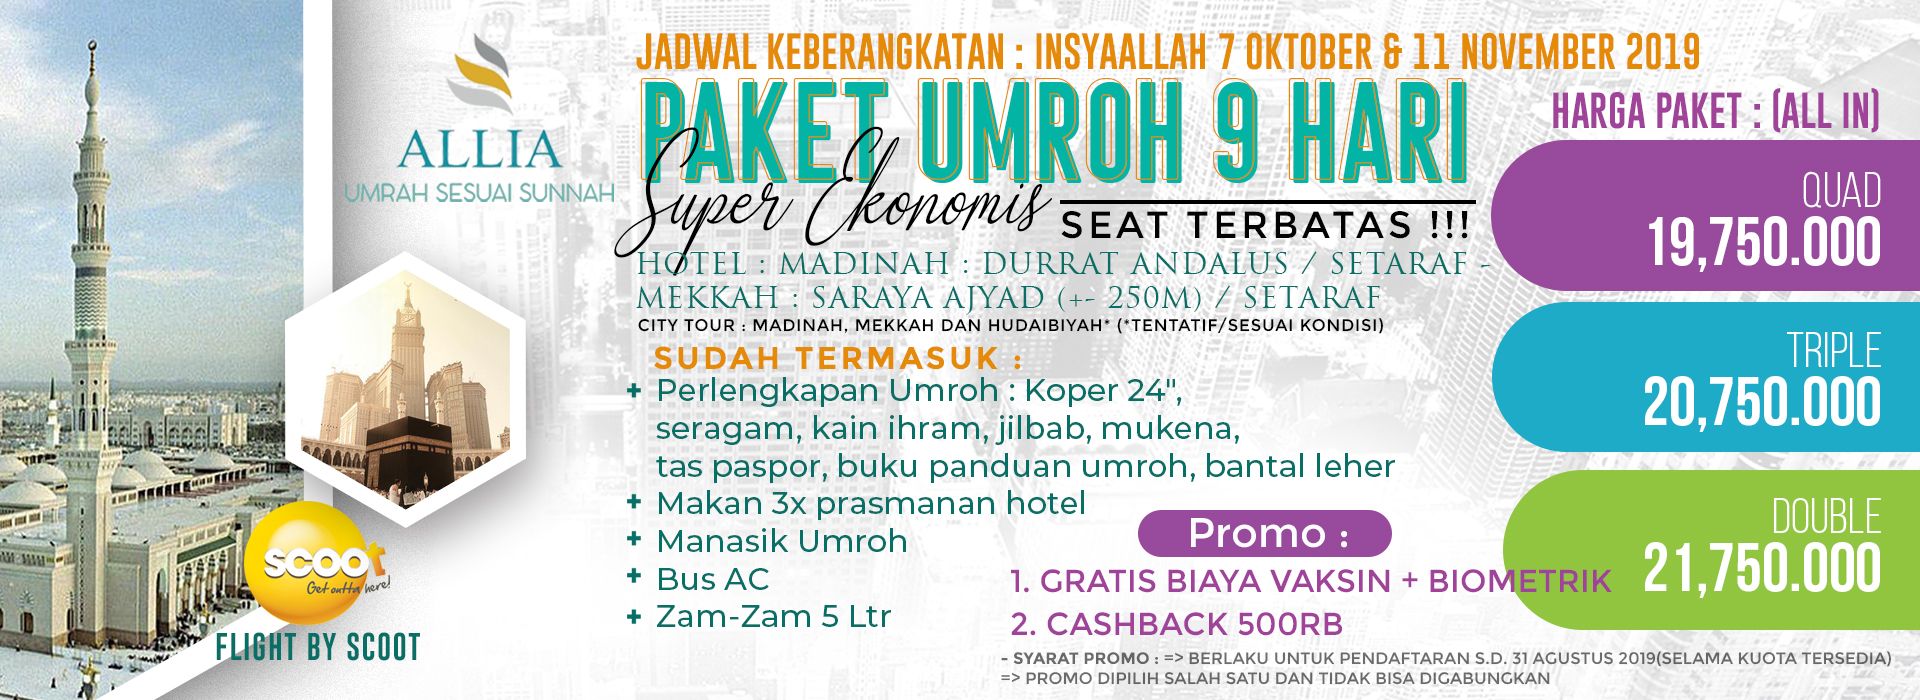 Harga Paket Umroh Surabaya